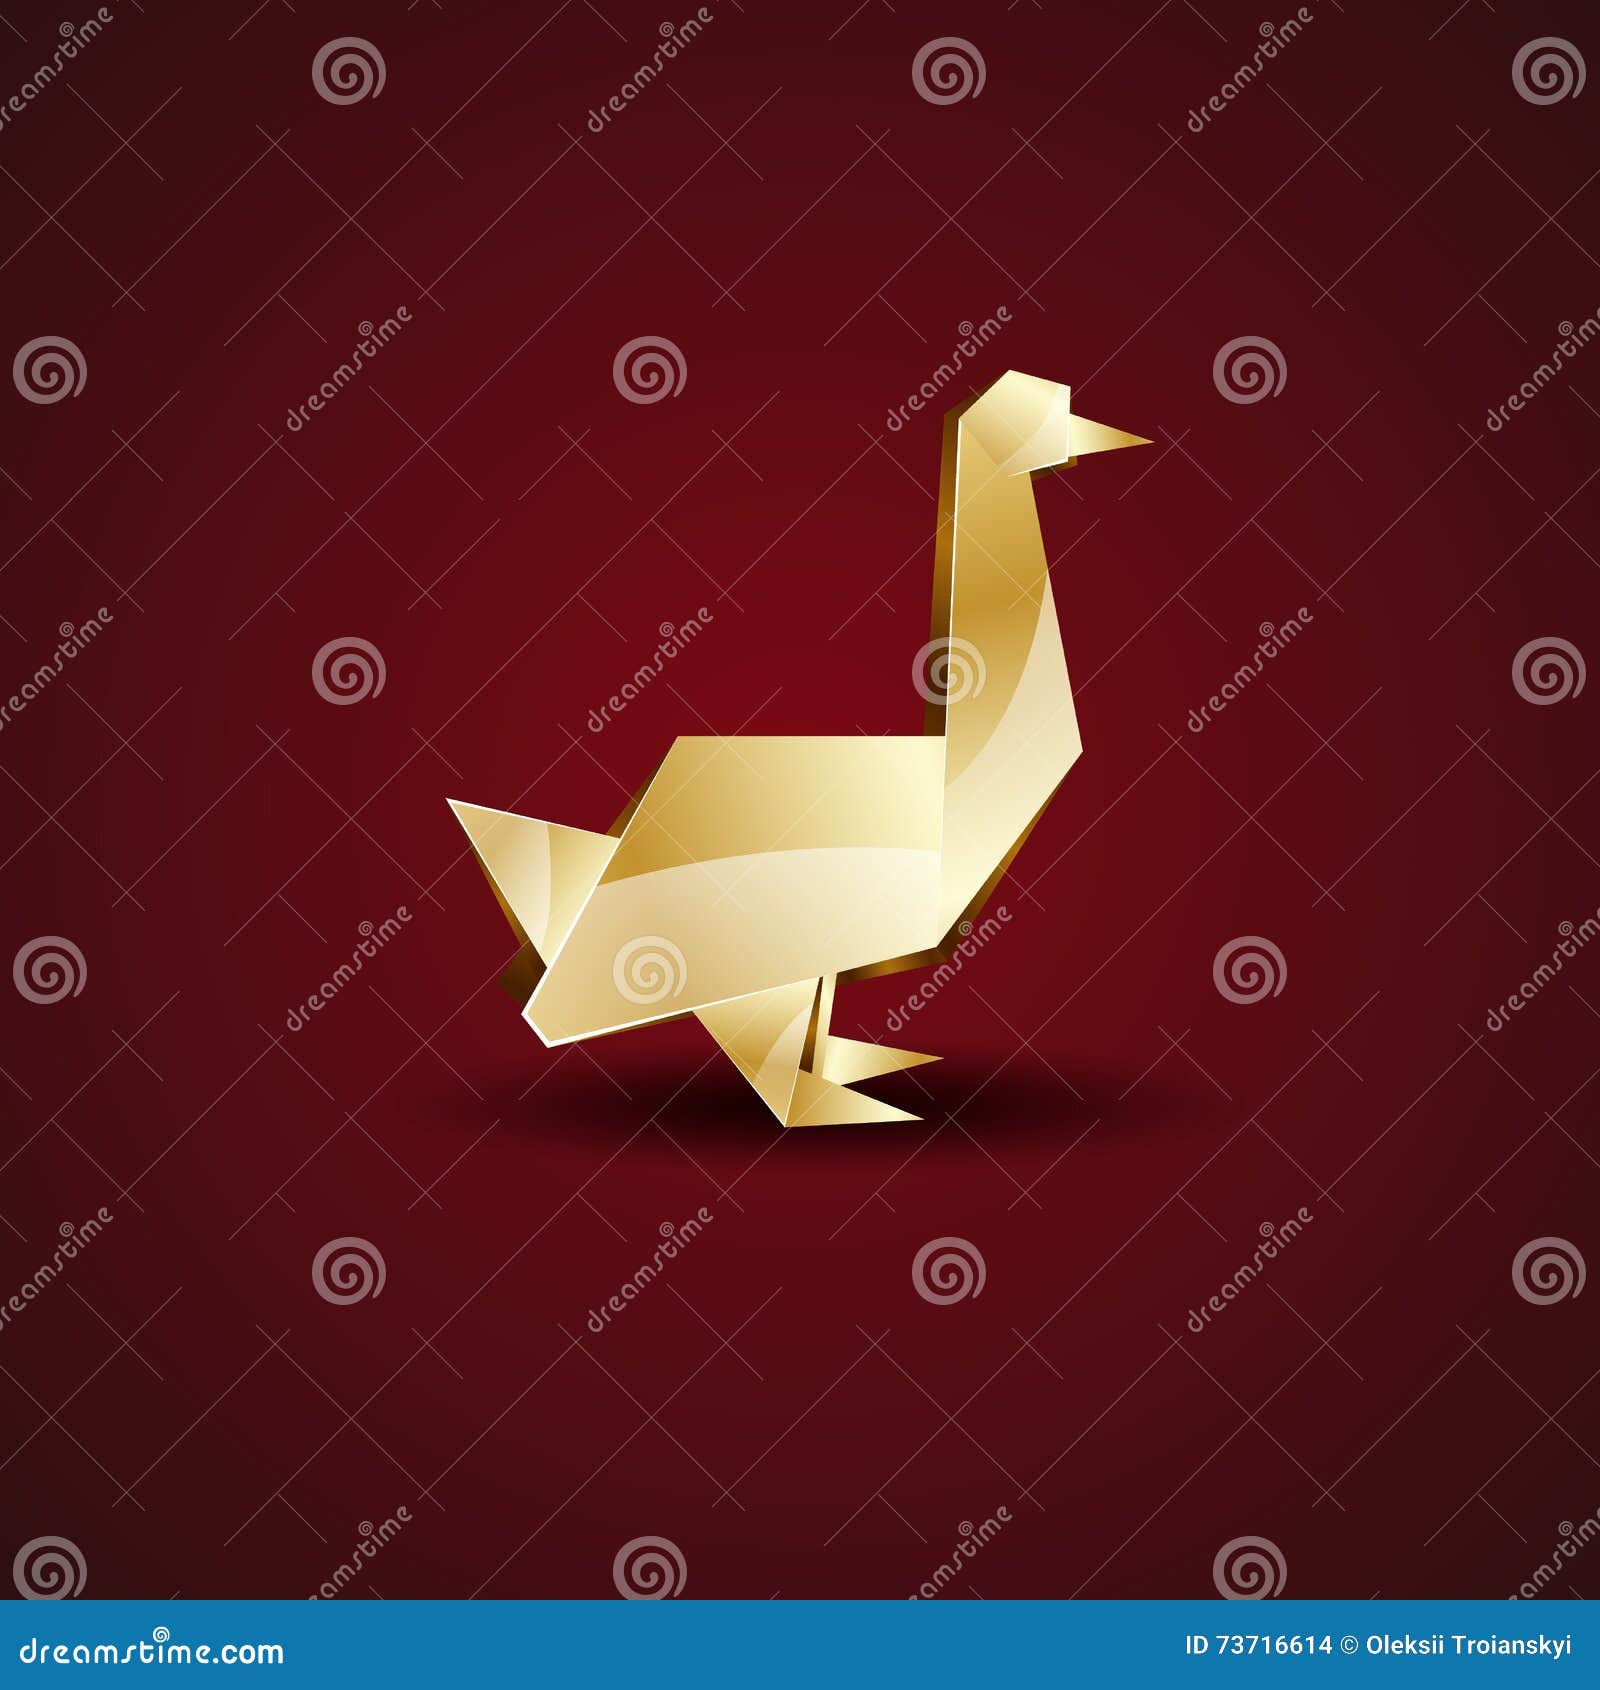 Vector Origami Golden Goose. Stock Vector - of golden, bird: 73716614